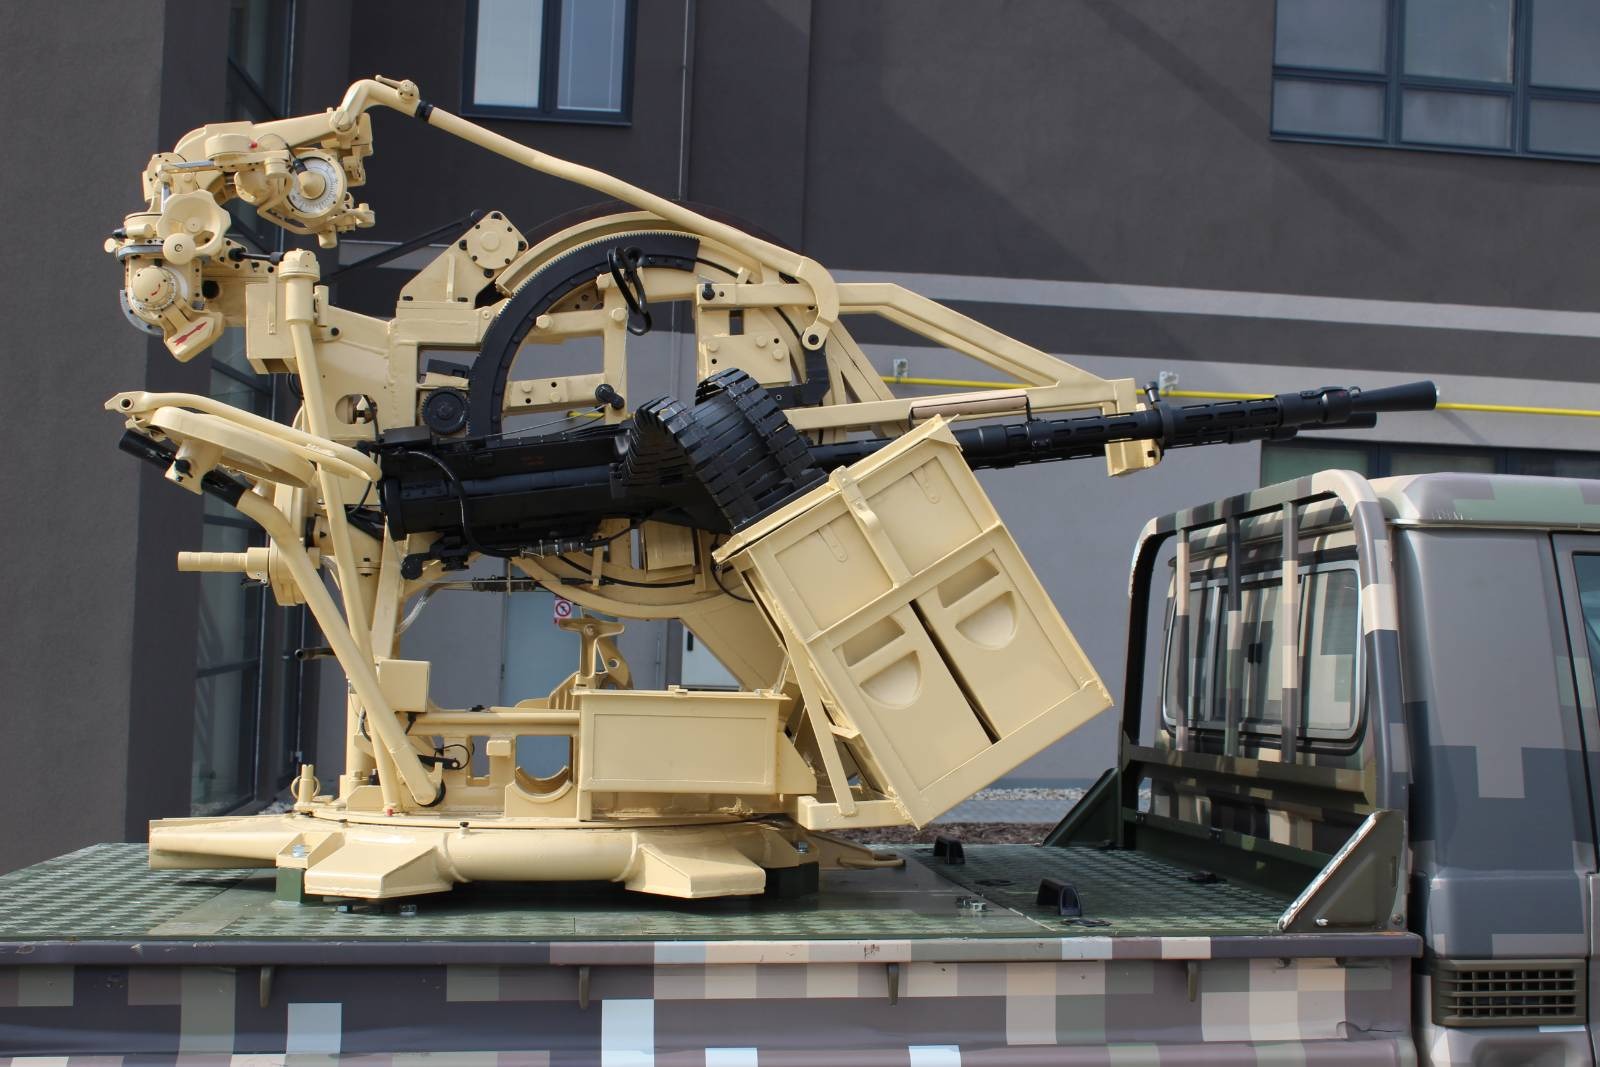  Viktor – мобільна зенітна установка зі спареним 14,5 мм кулеметом